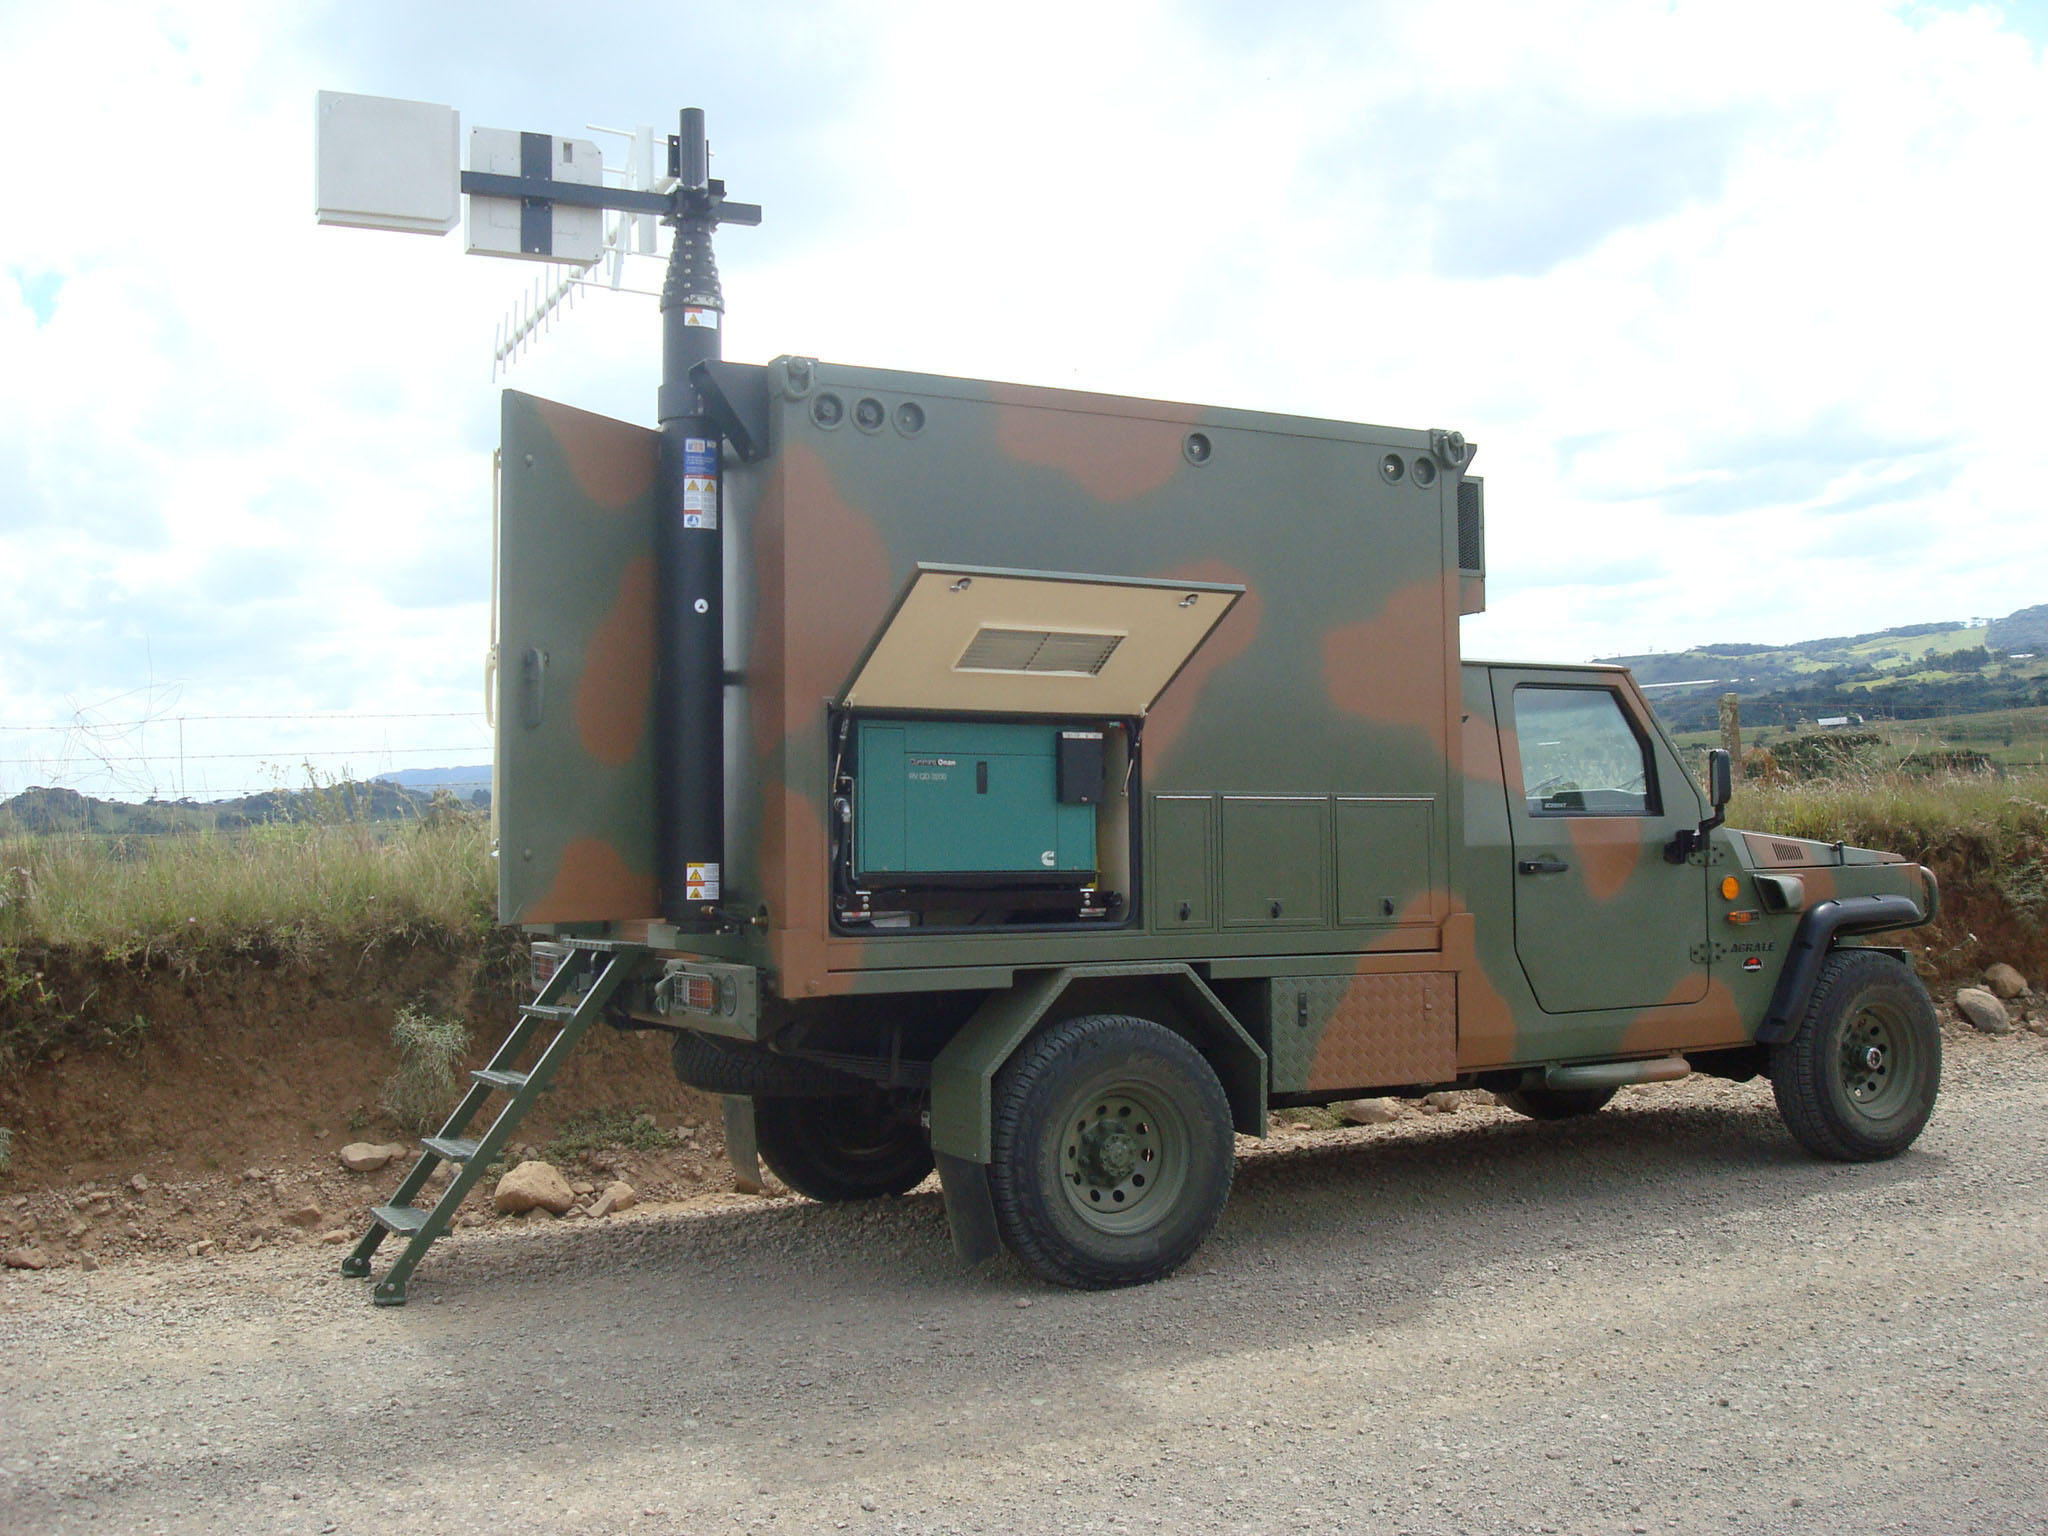 Orbisat y Agrale presentan un vehículo equipado con radar para el rastreo de aviones de baja altitud Agralemarruam20orbisat